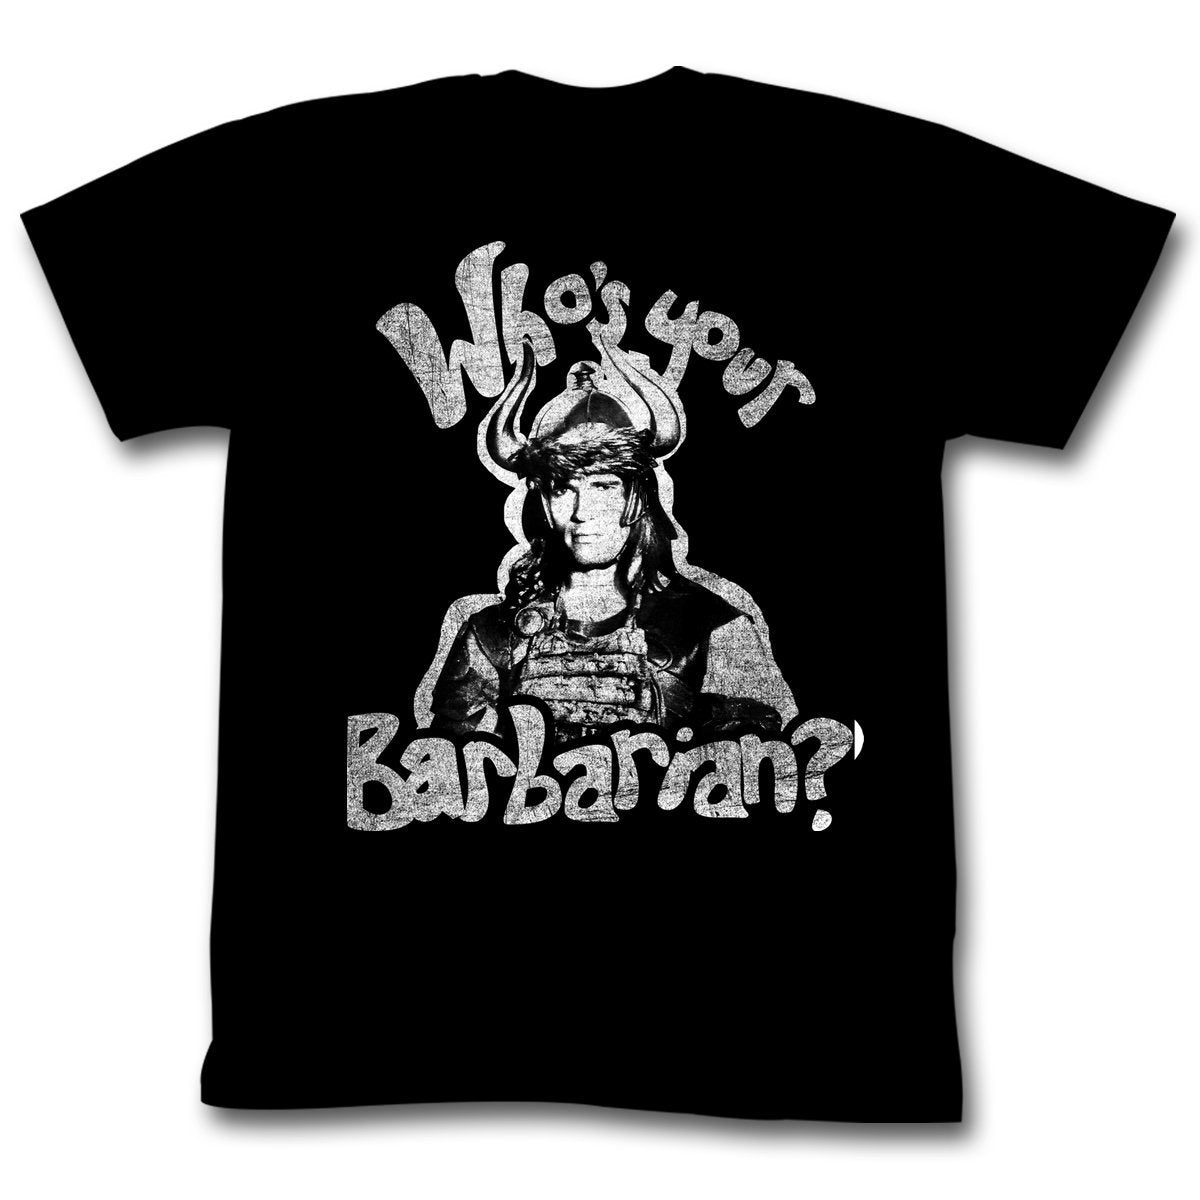 Shirt Conan The Barbarian Who's Your Barbarian T-Shirt